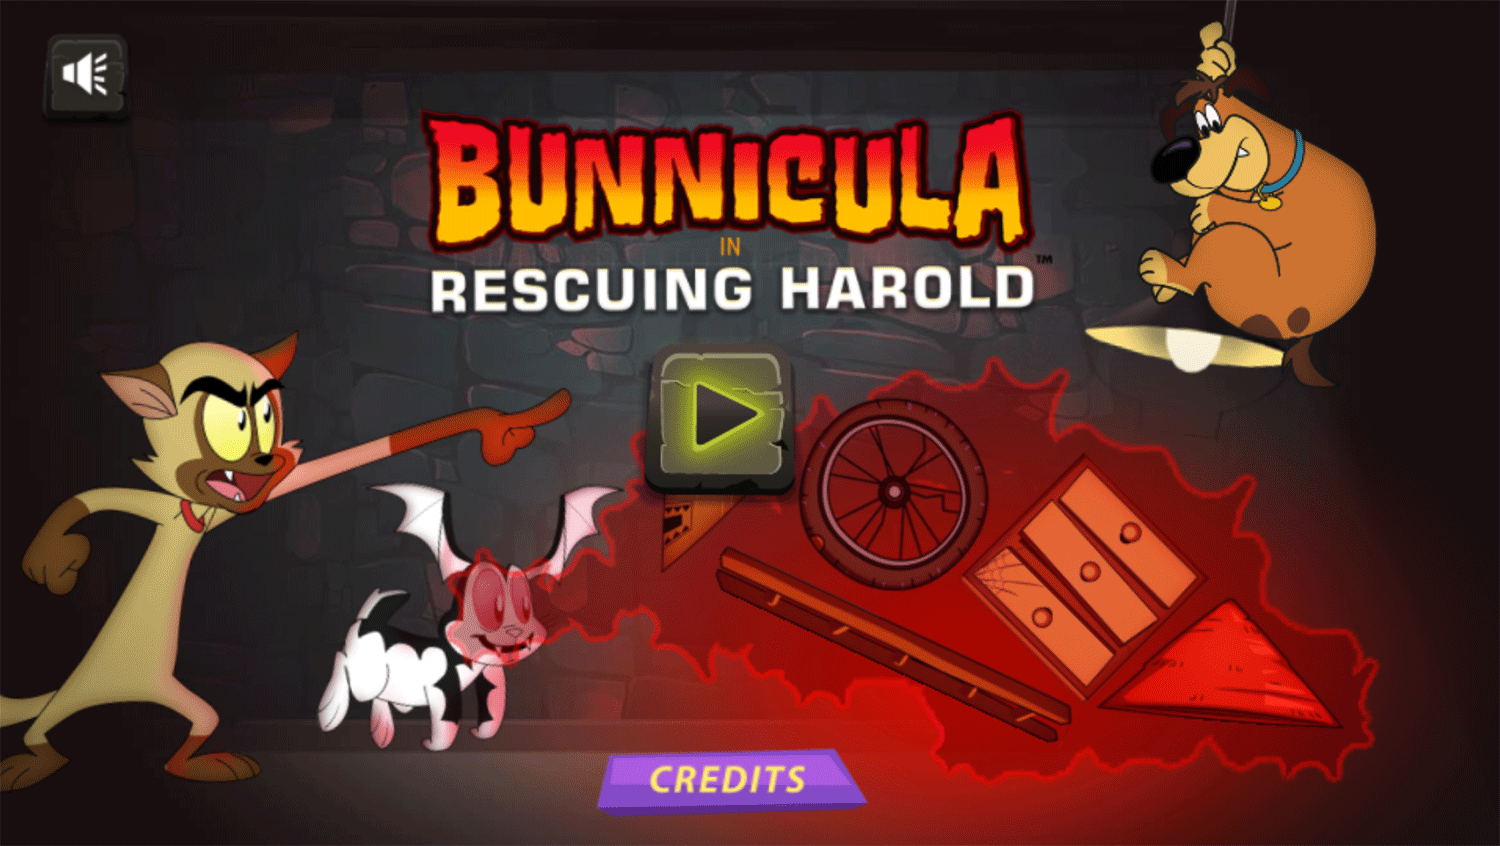 Bunnicula in Rescuing Harold Game Welcome Screen Screenshot.